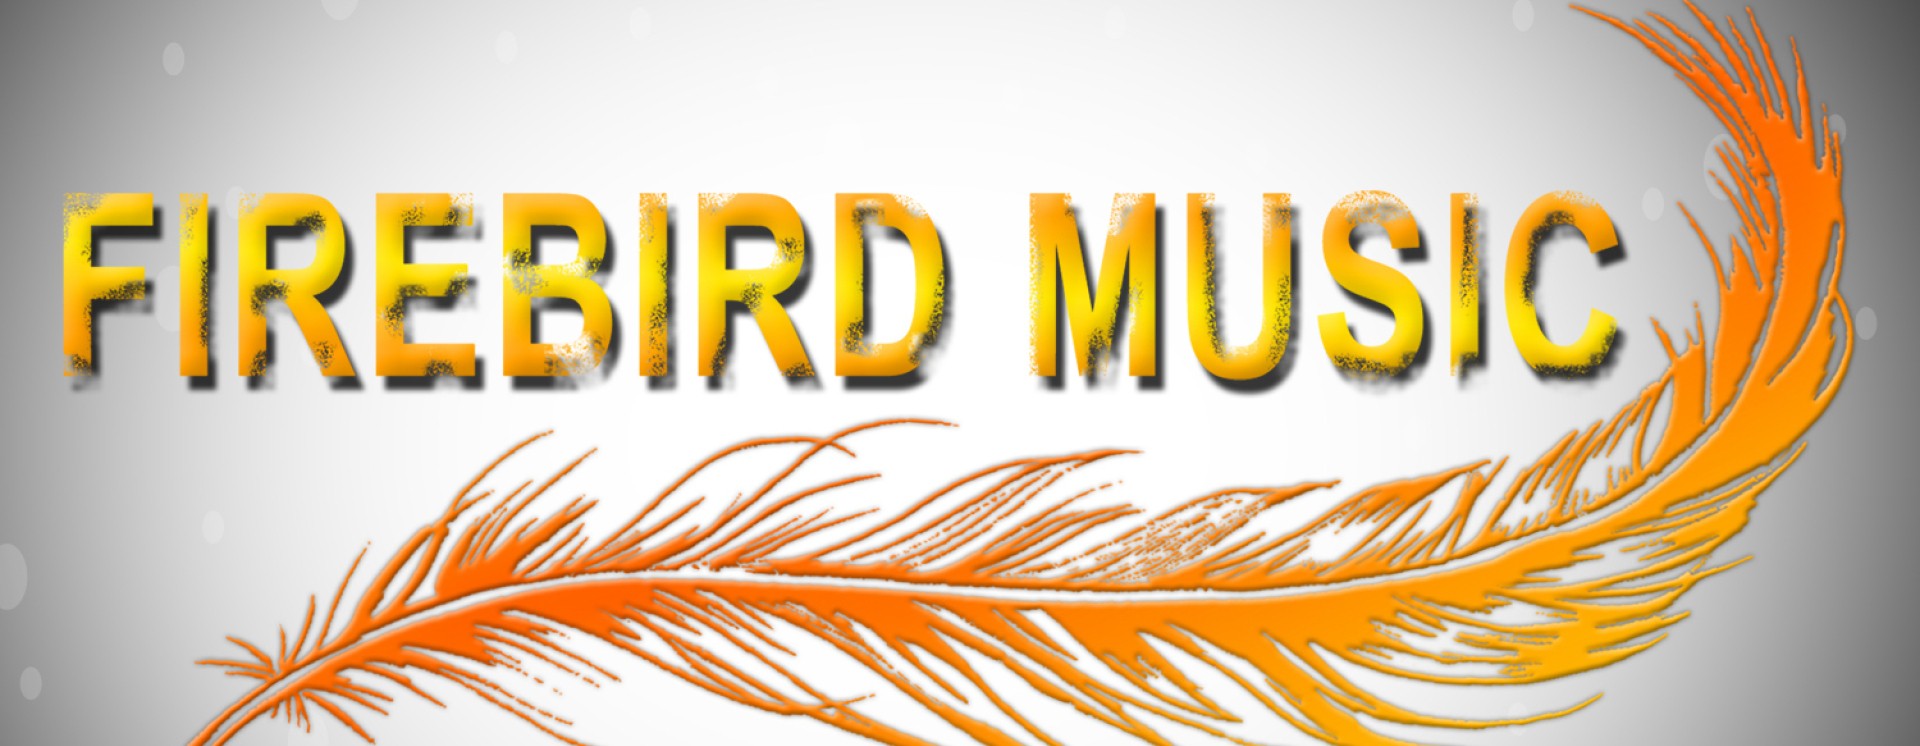 Firebird Music